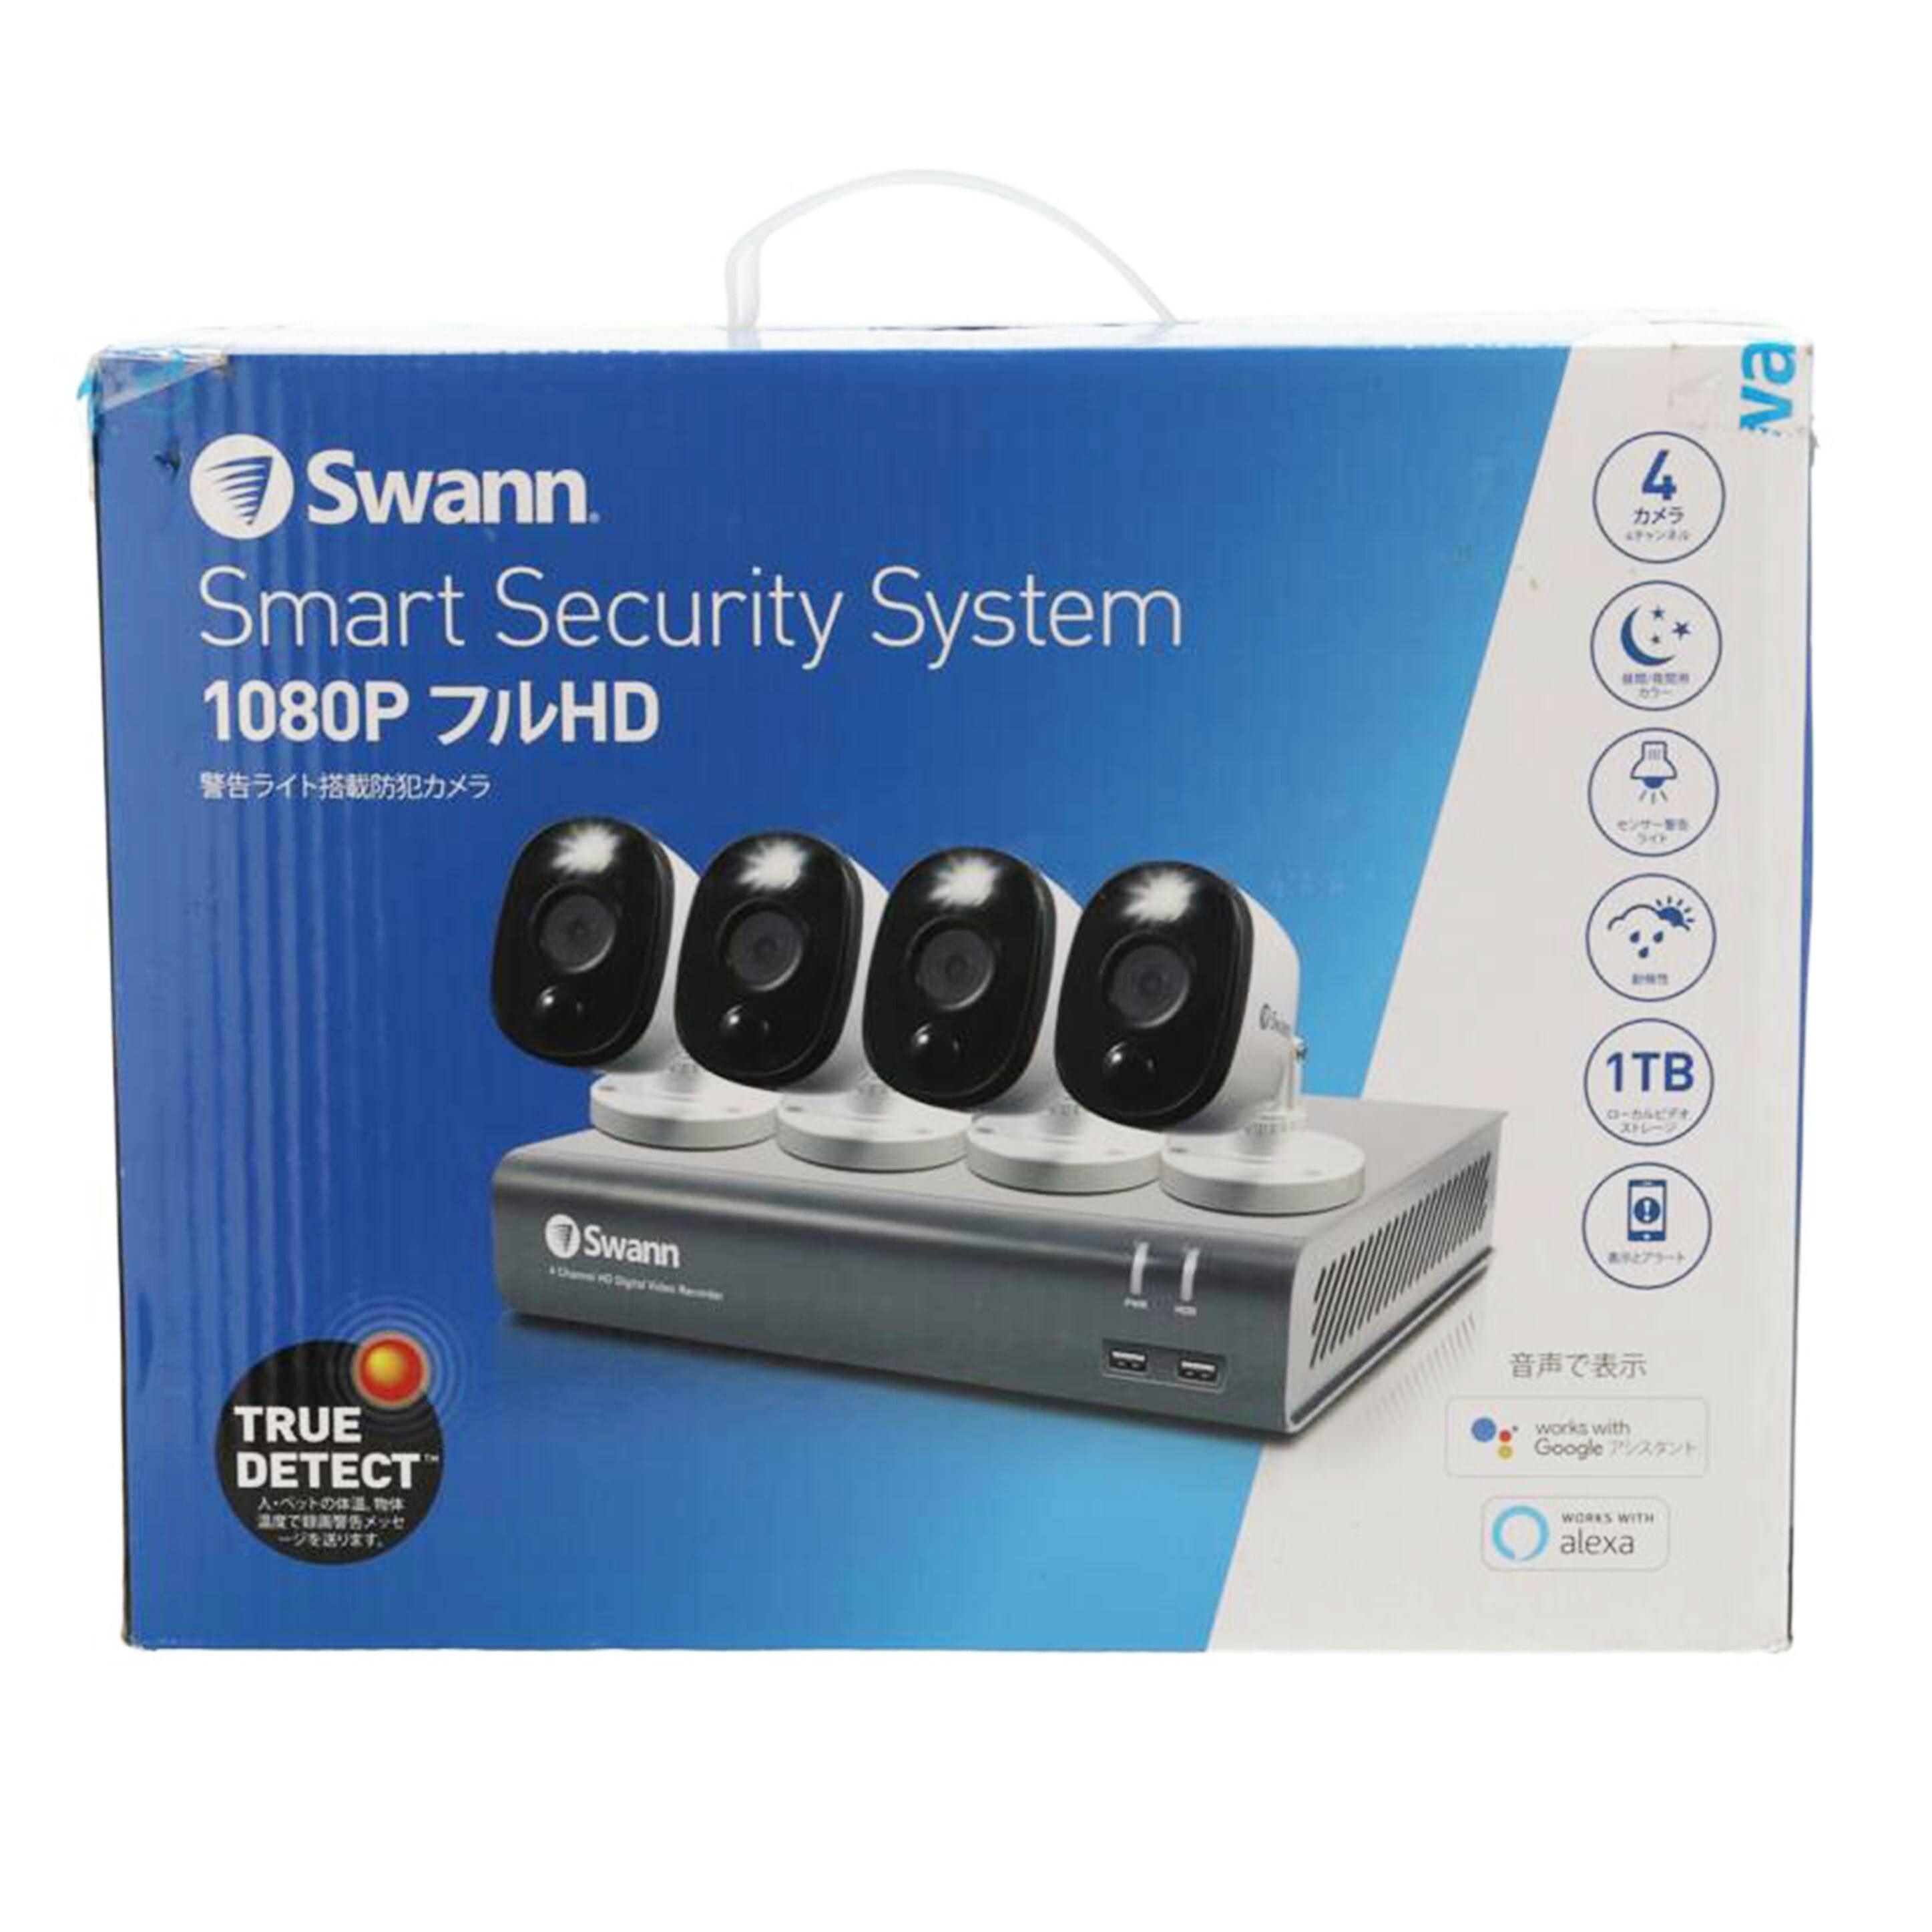 商品仕様Swann 警告ライト搭載防犯カメラ 1080p フルHD スマートセキュリティ